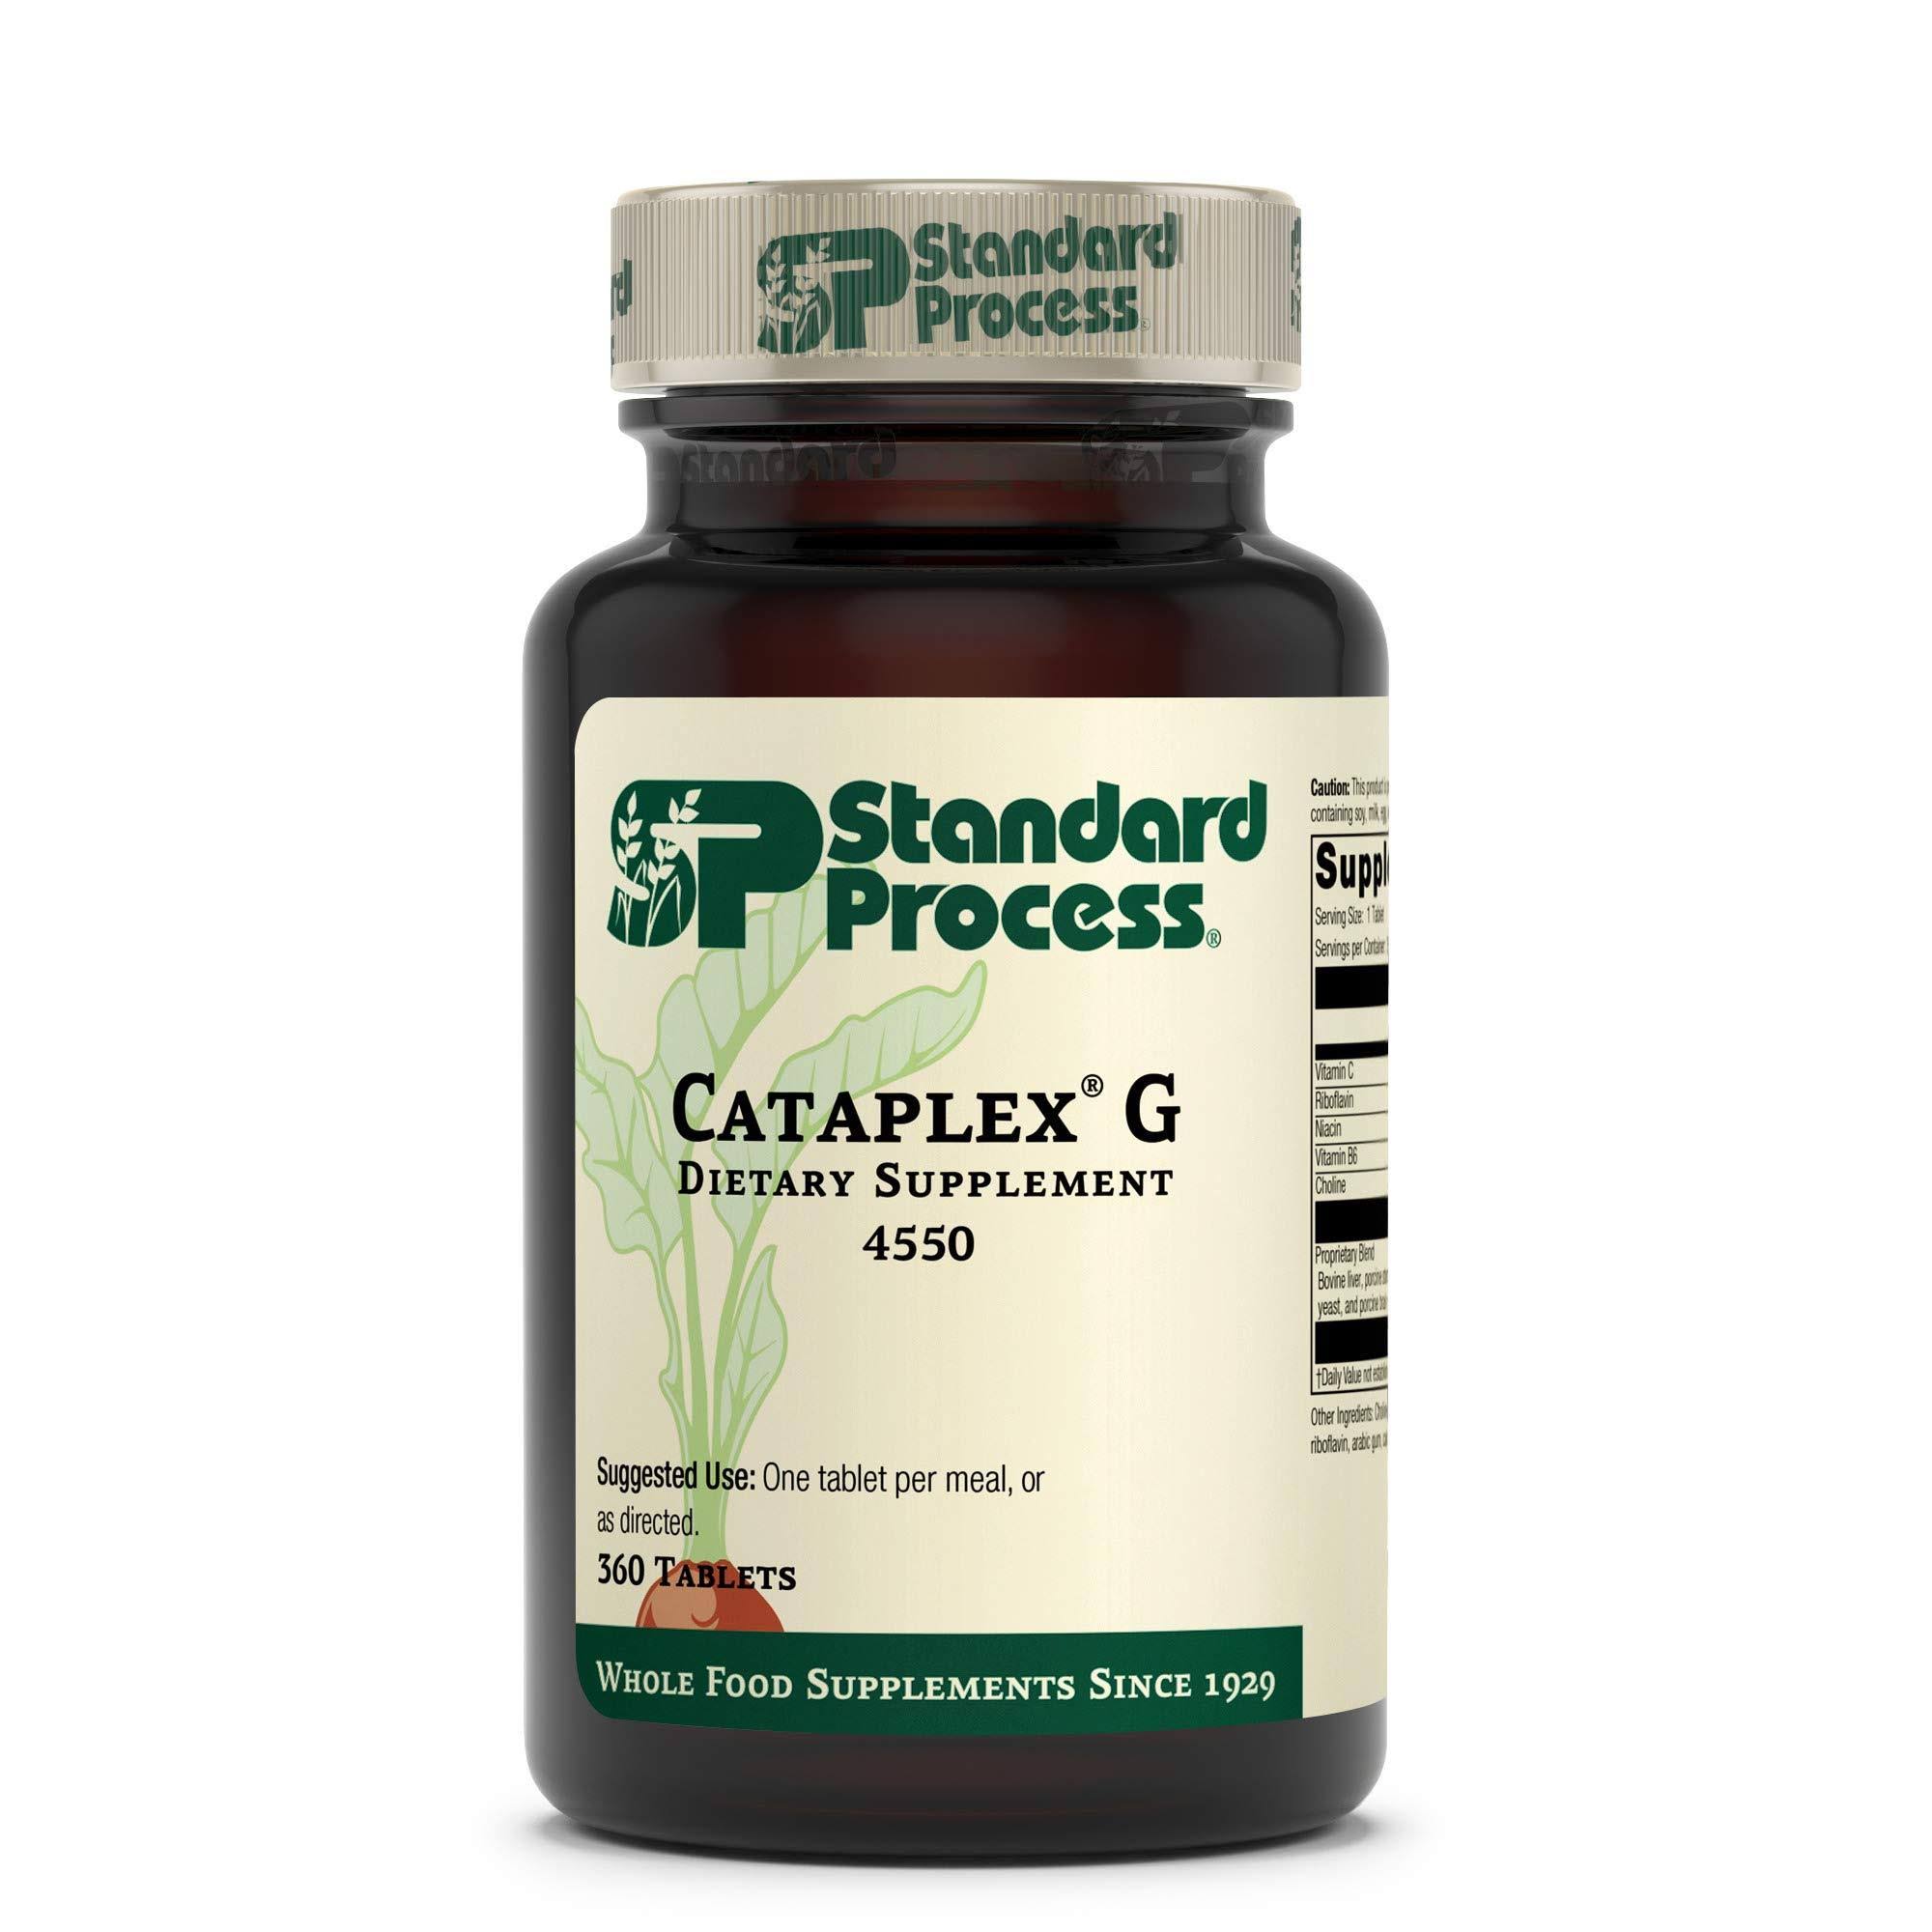 Standard Process Cataplex G 4550 Supplement - 360 Tablets